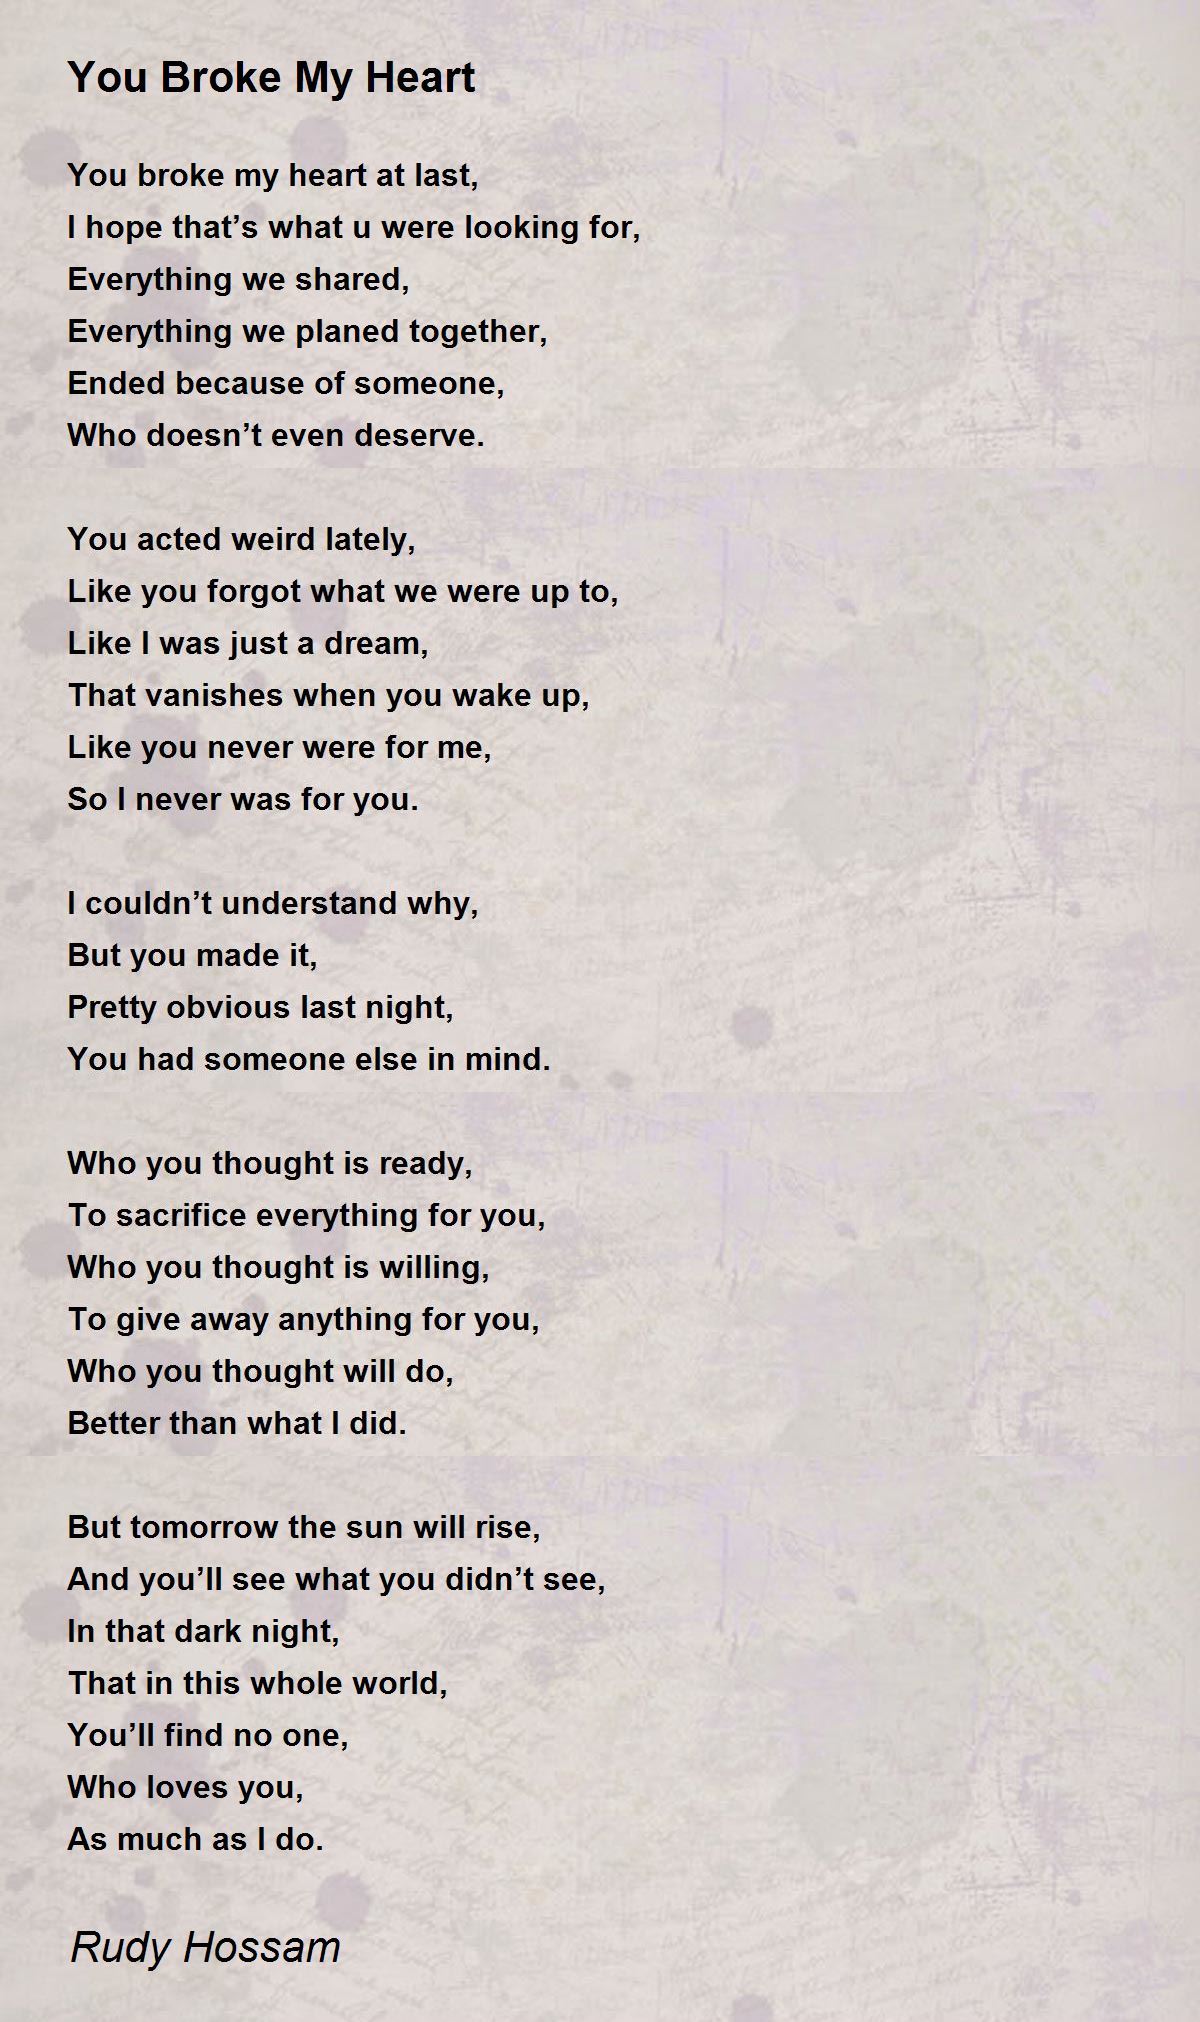 You Broke My Heart - You Broke My Heart Poem by Rudy Hossam